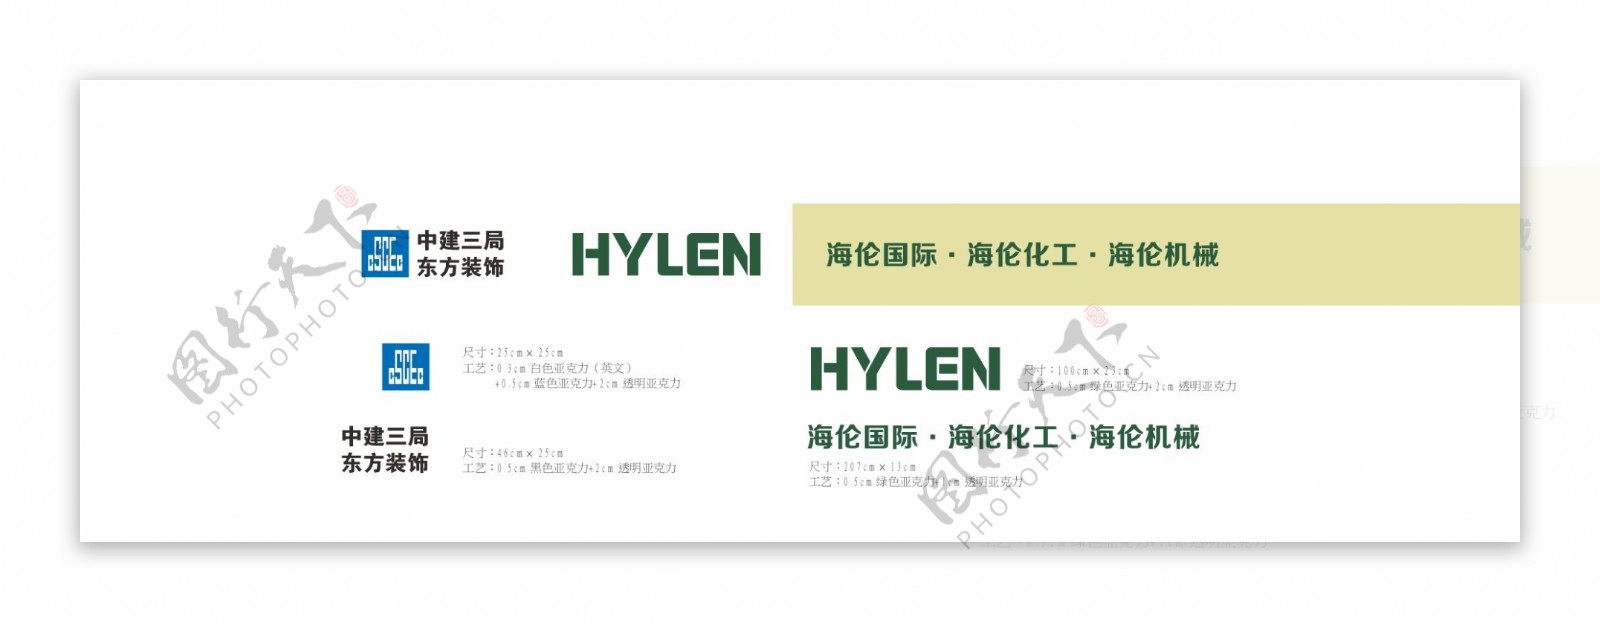 中建三局HYLEN海伦国际海伦化工海伦机械东方装饰标志标志设计设计LOGO